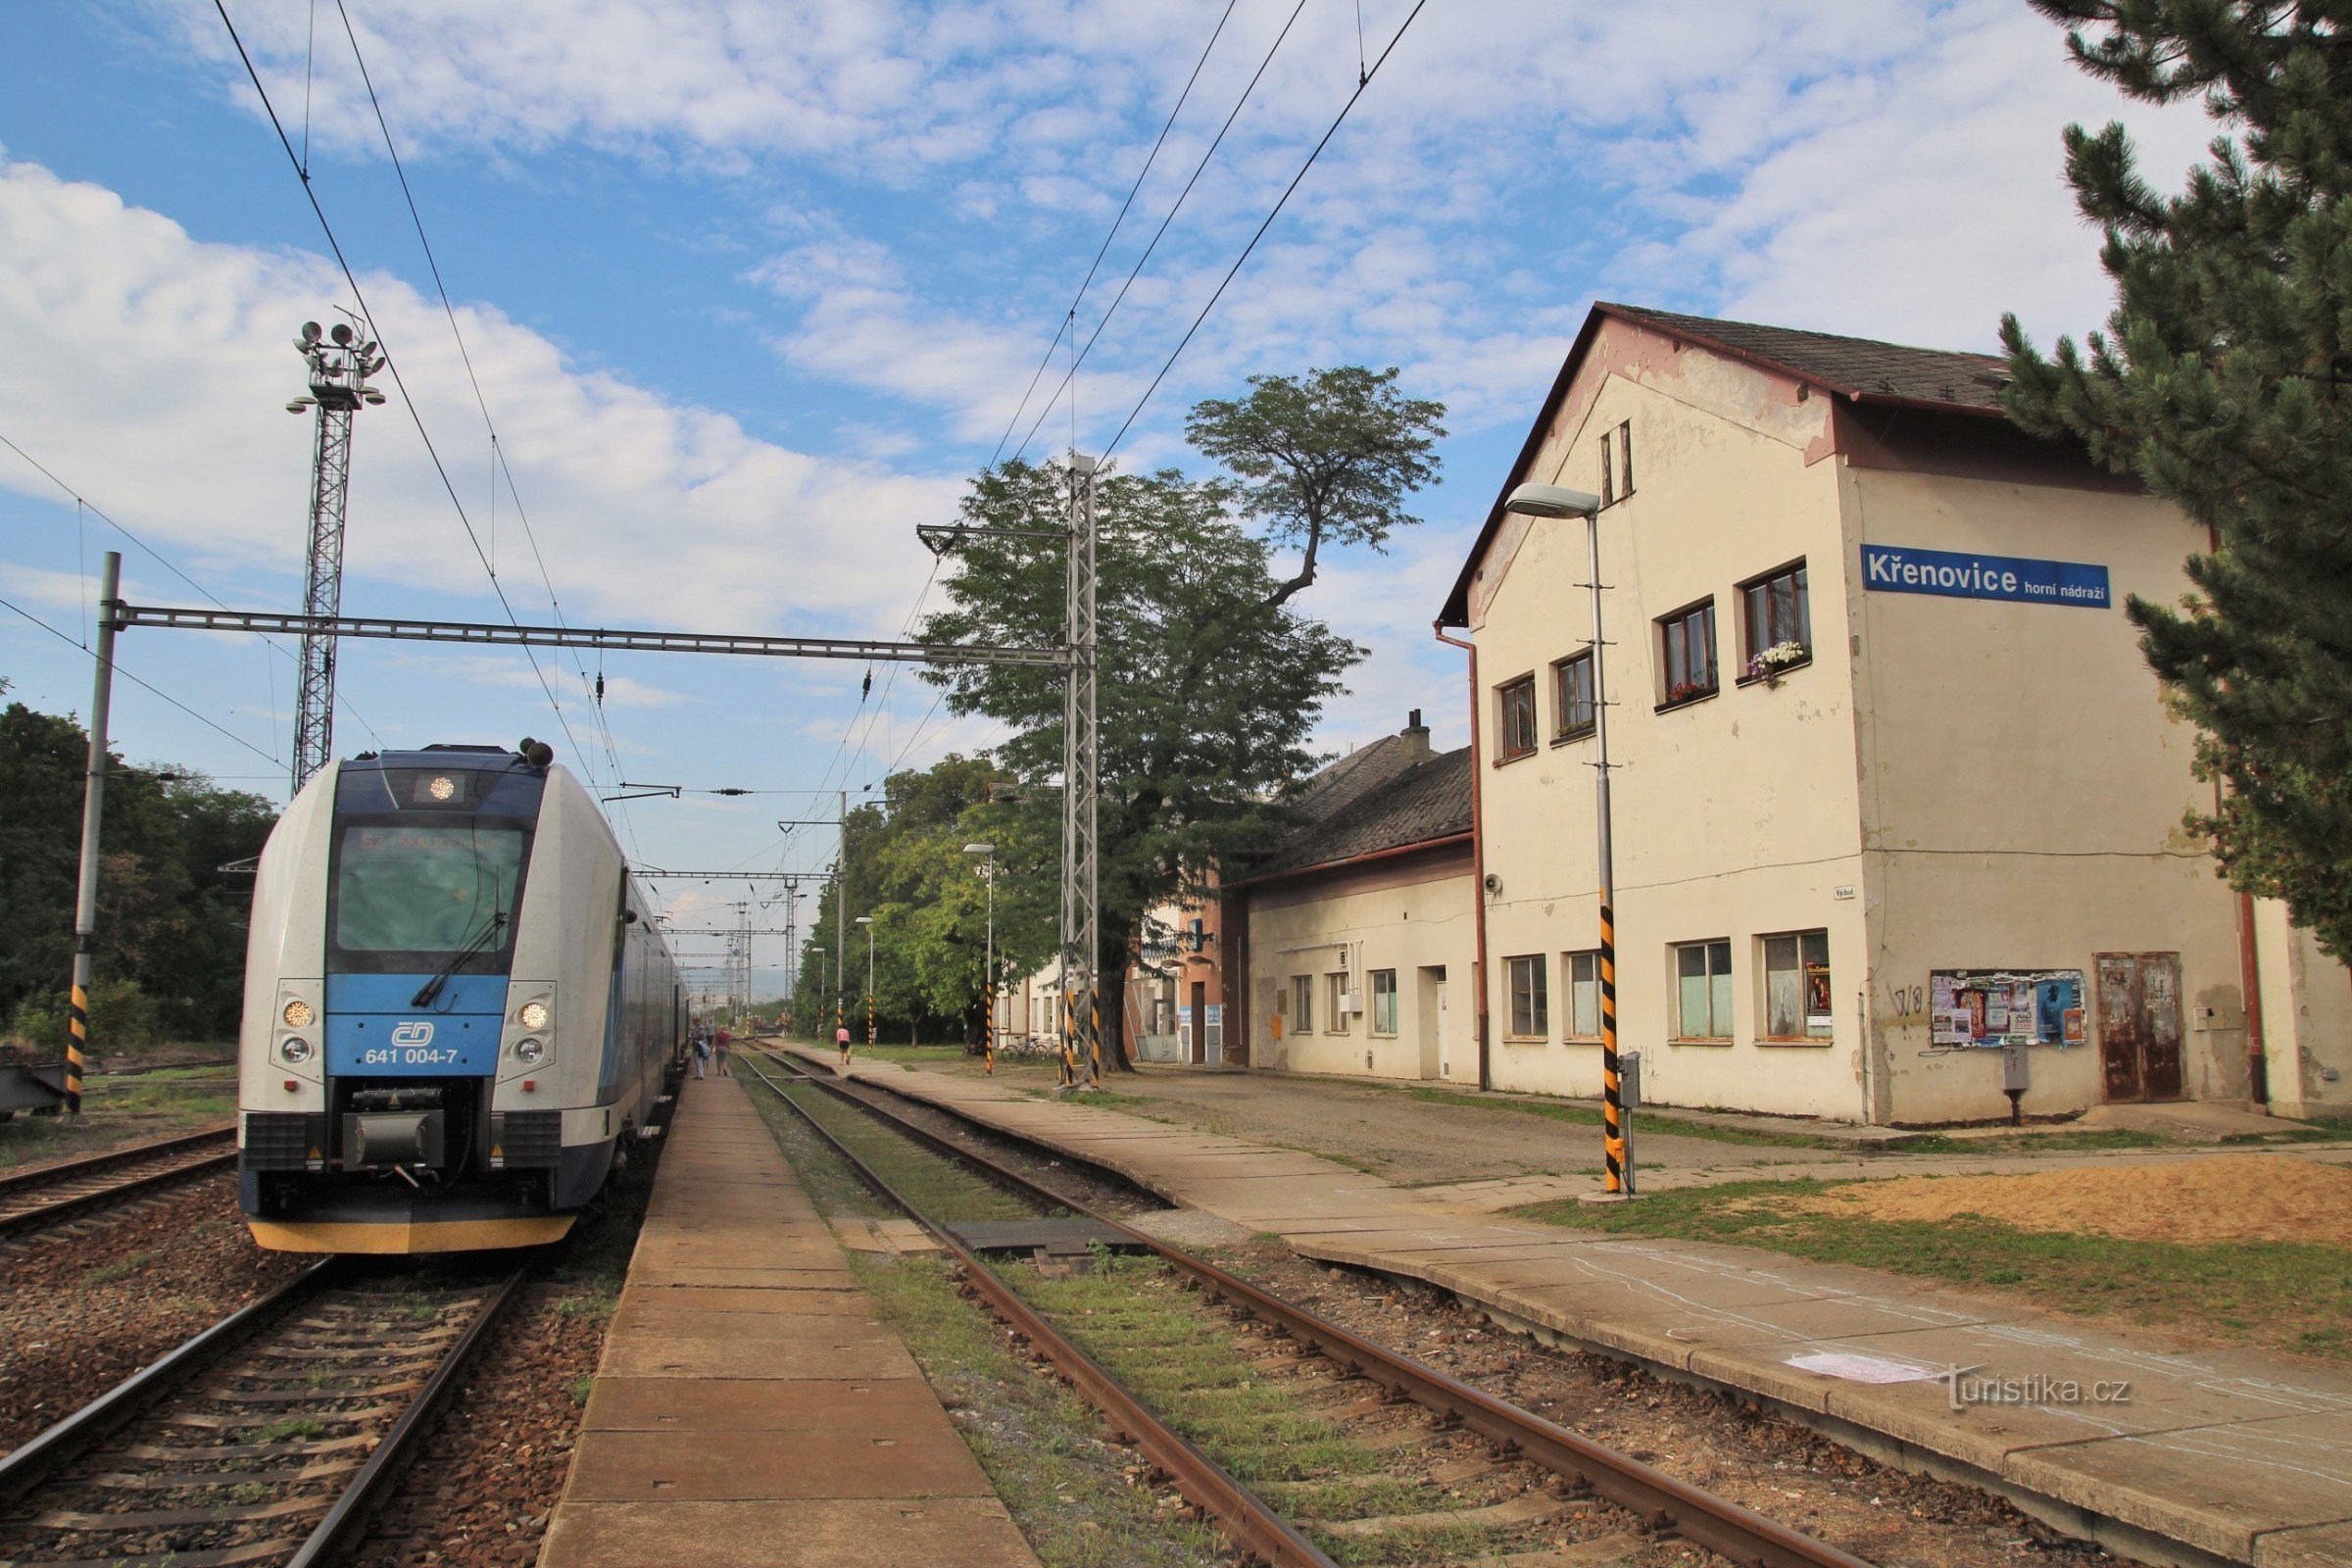 Křenovice, upper station